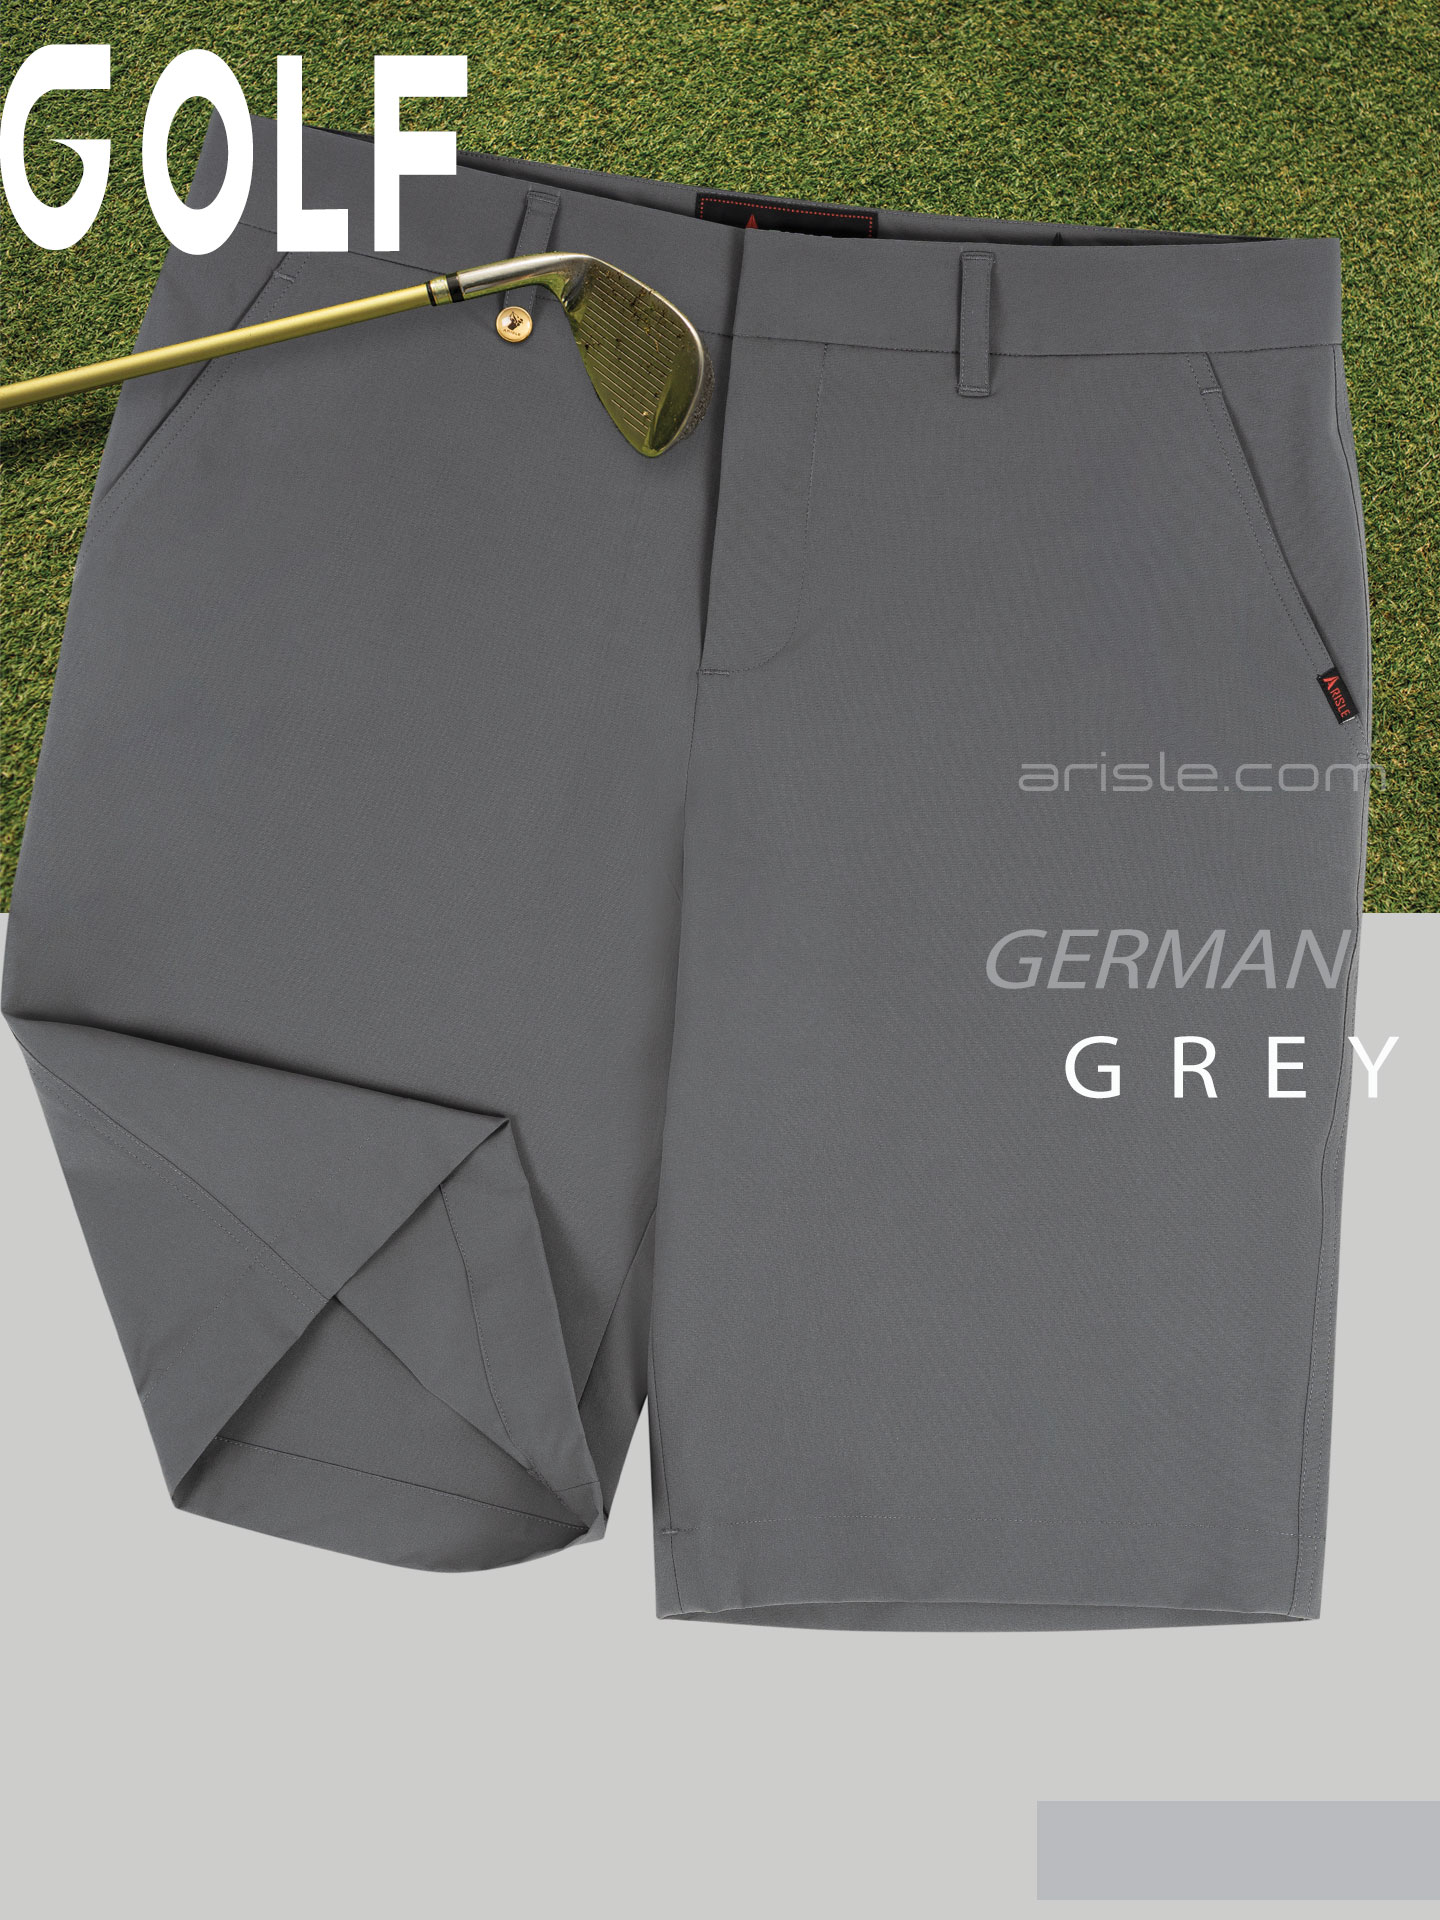 Quan-Short-Golf-ARISLE-Bossman-German-Grey-6